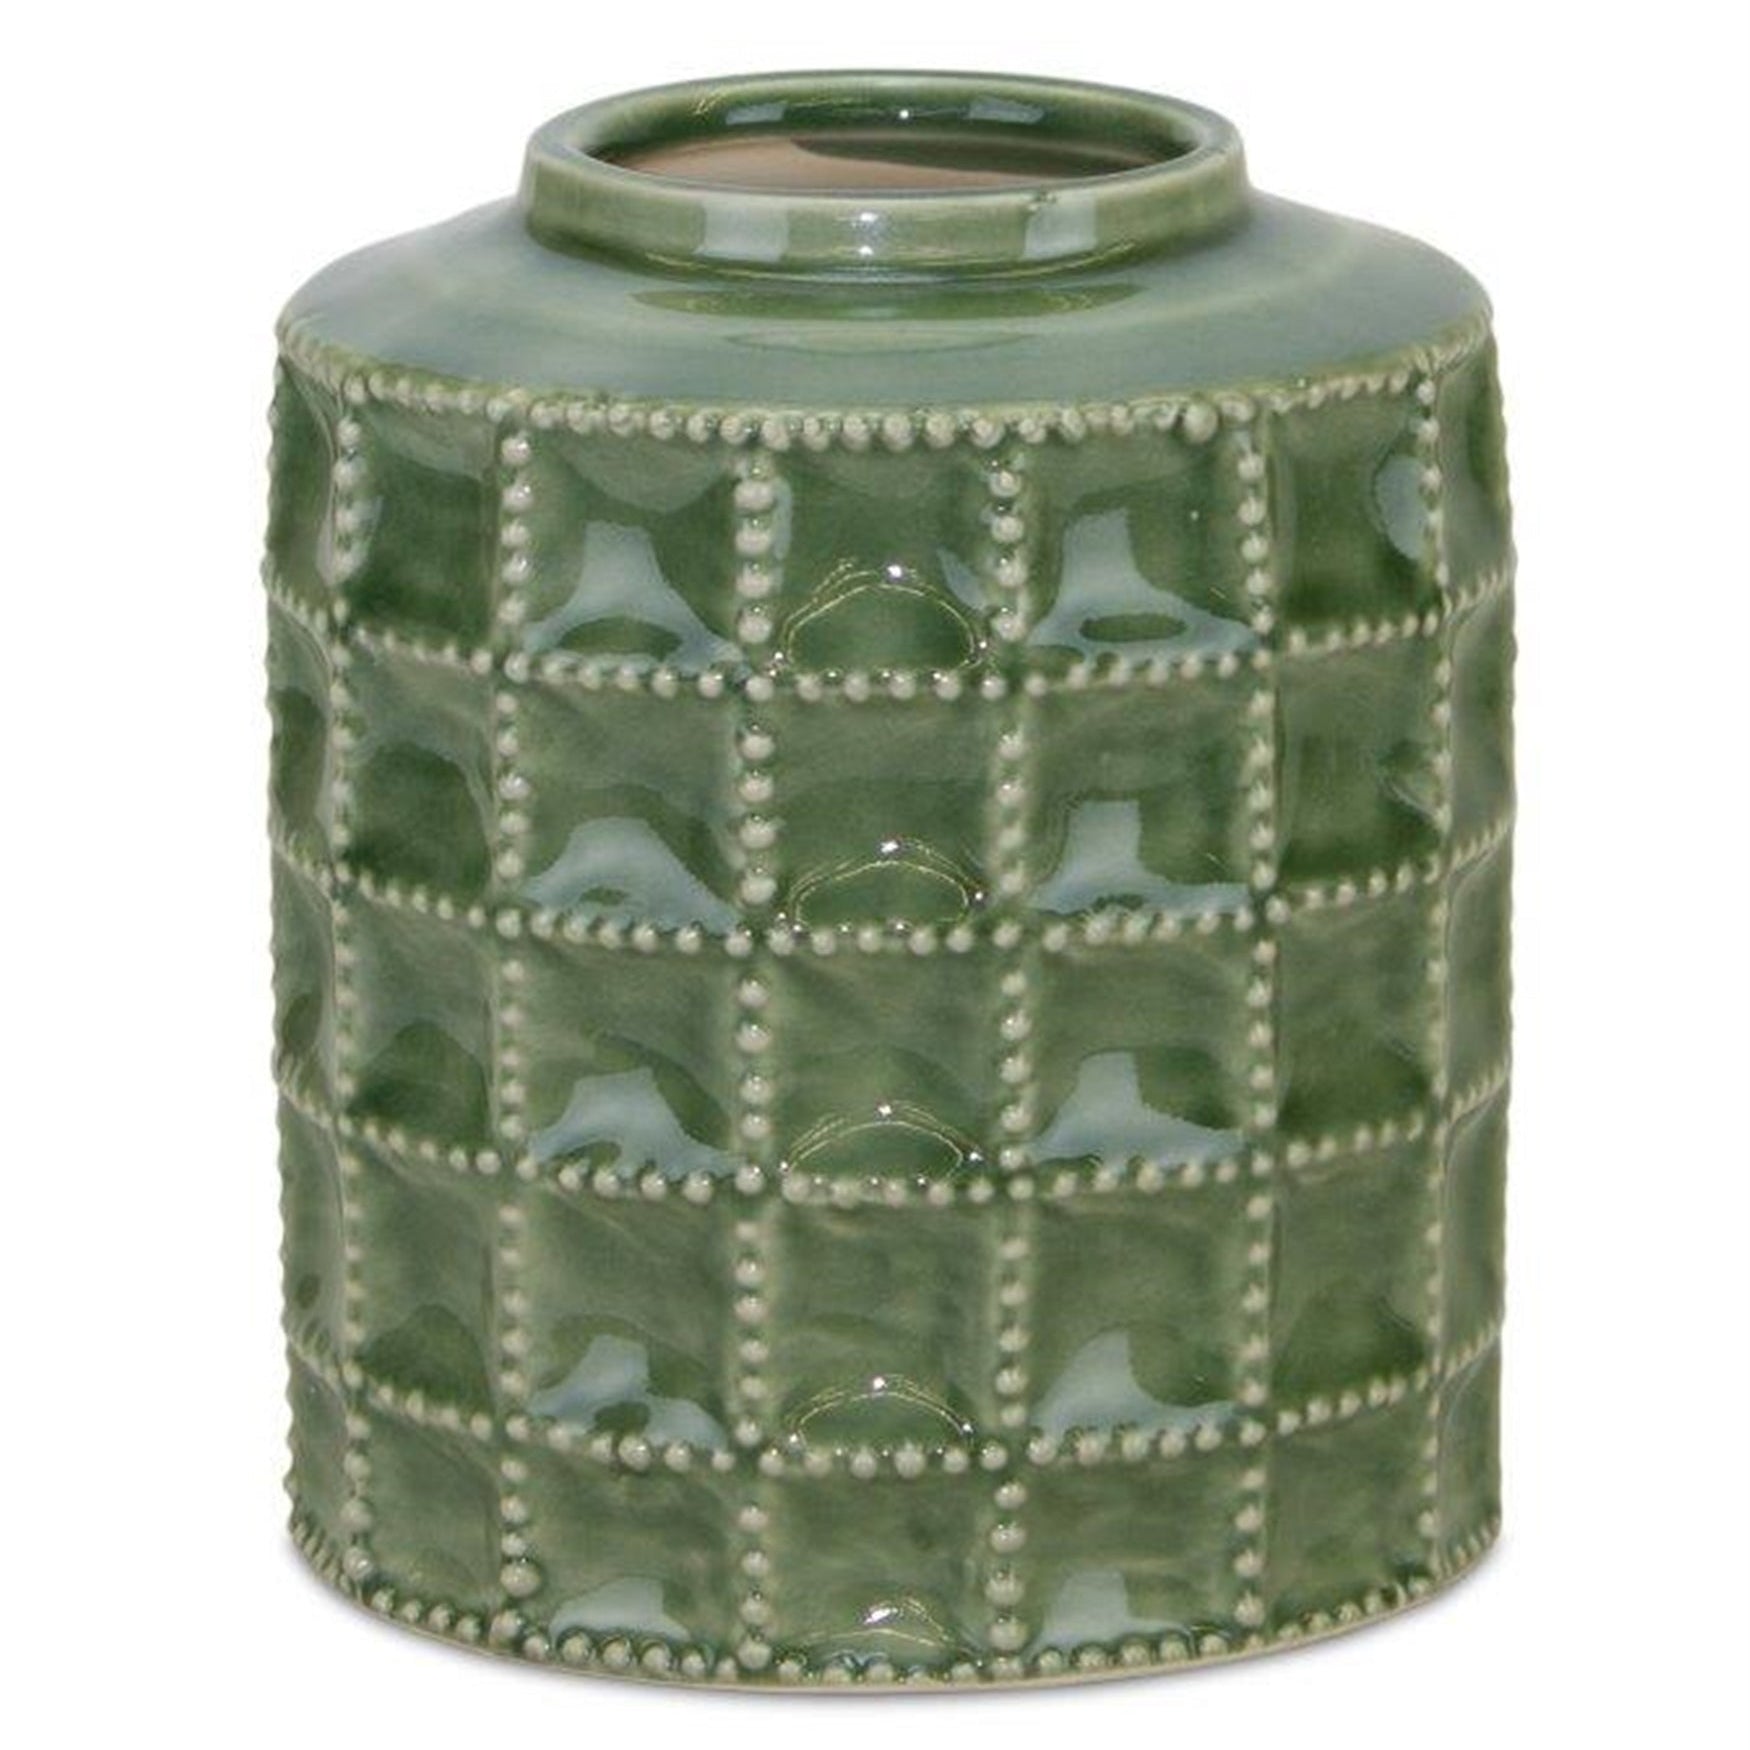 Sage Green Terra Cotta Vase 6.75"H - Vases